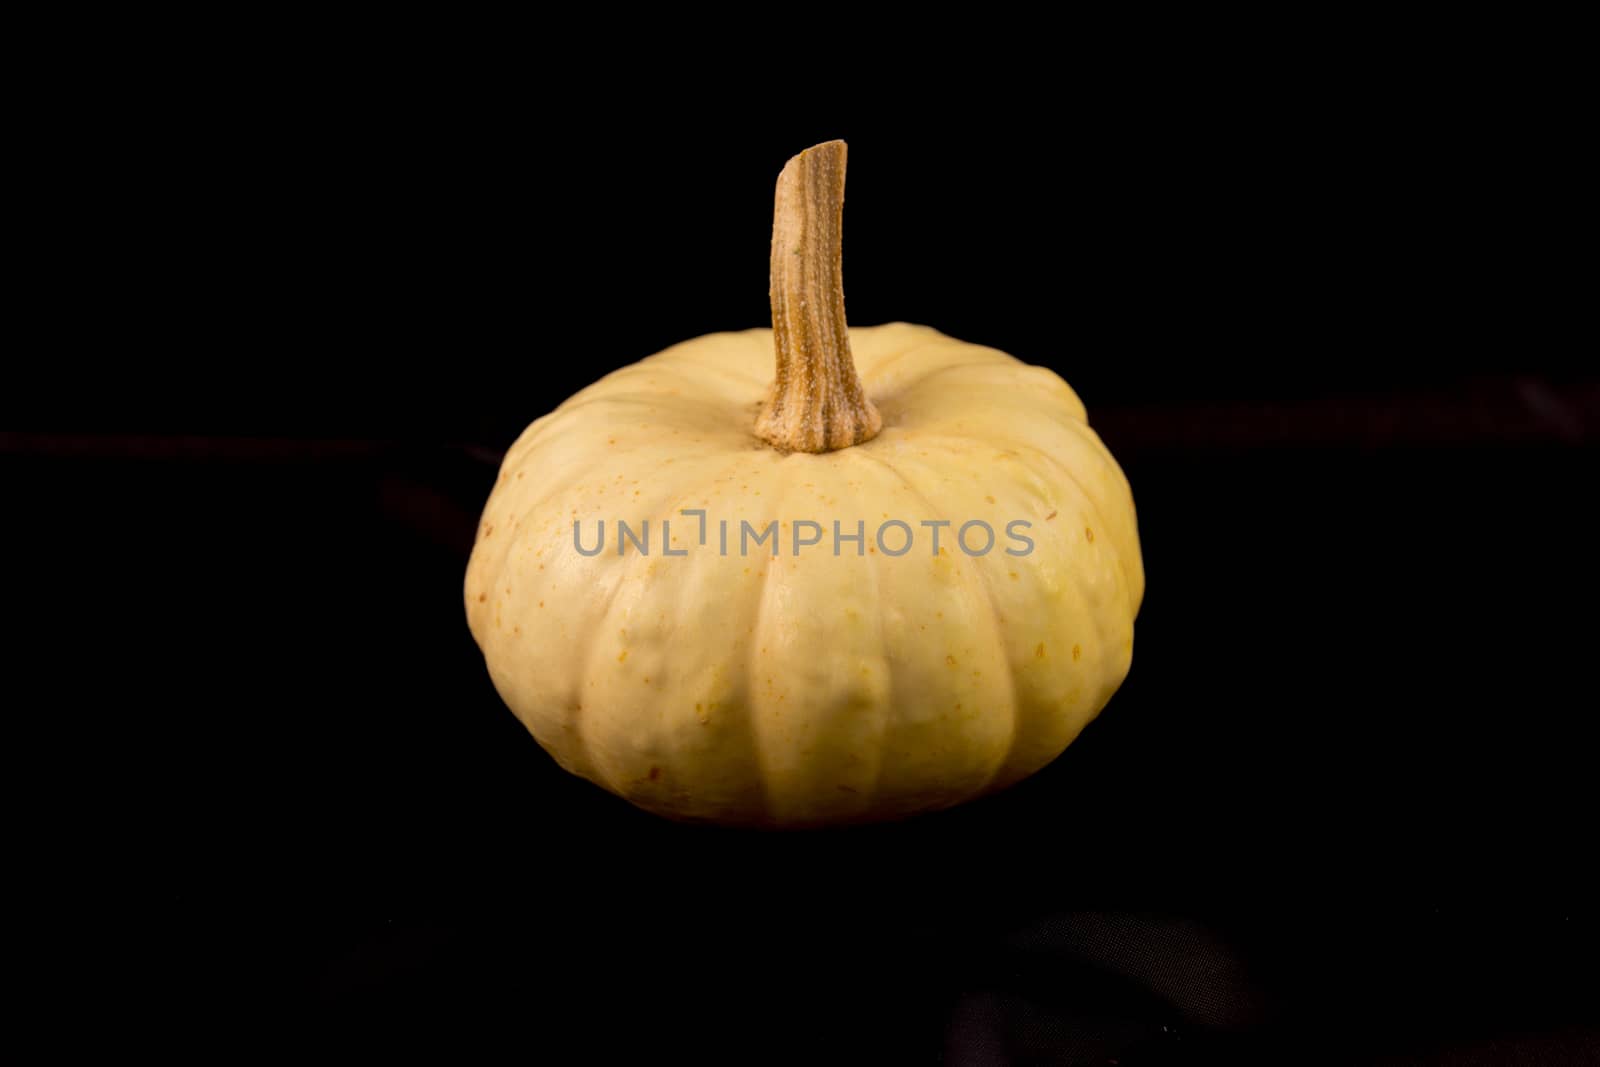 ornamental gourd by goghy73